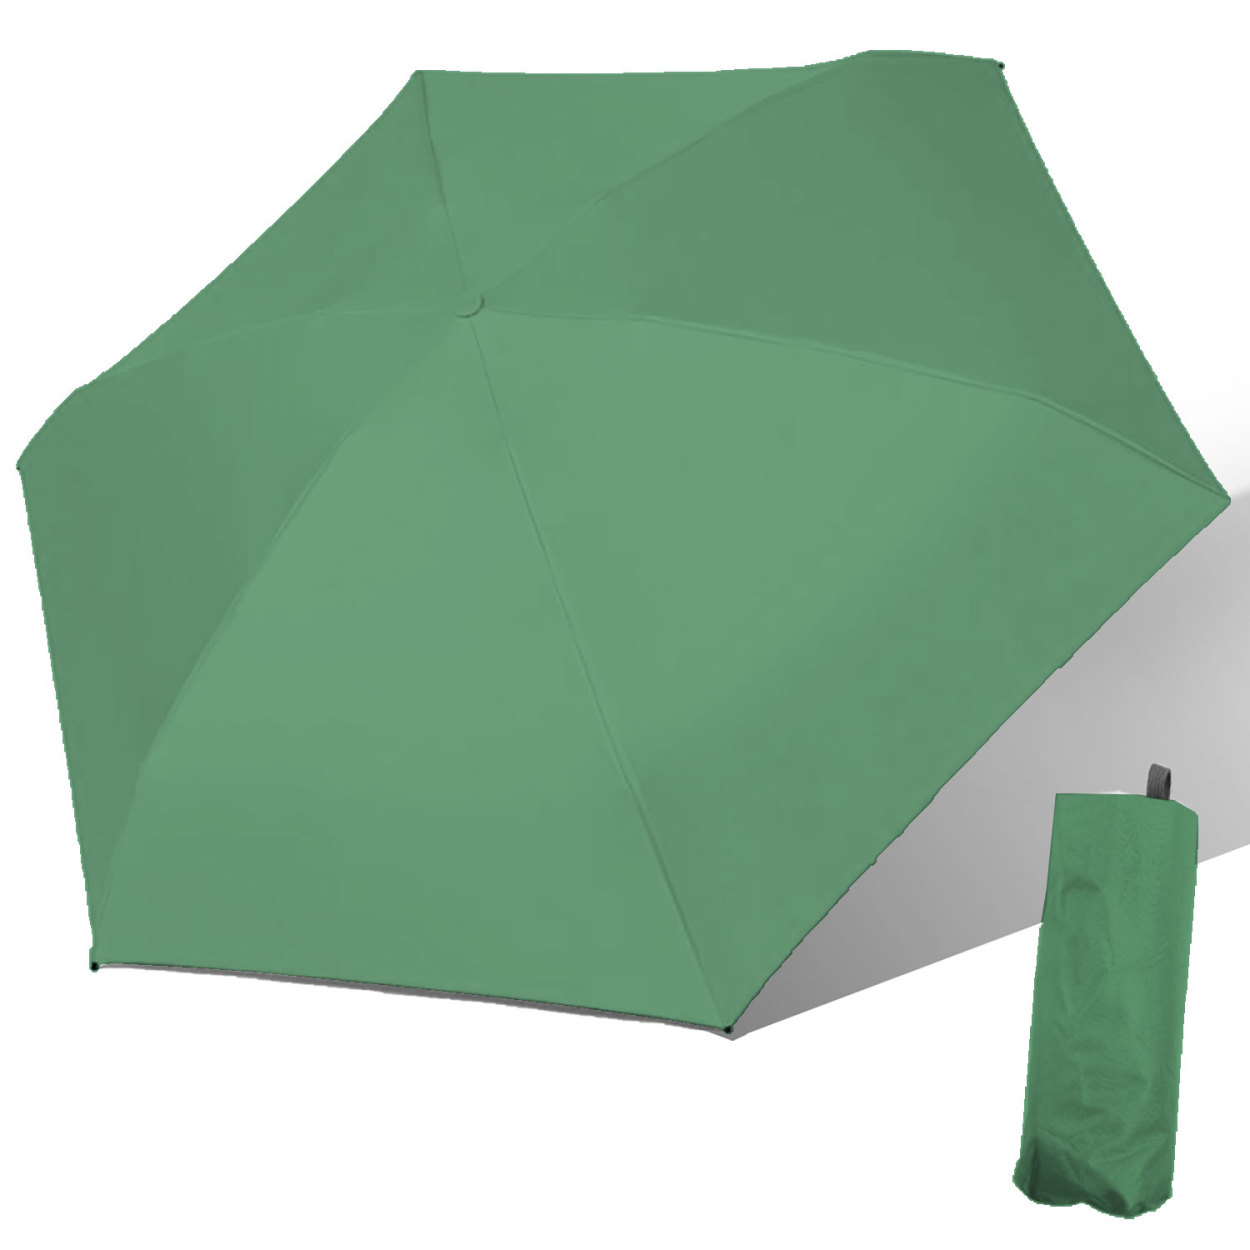 晴雨兼用折り畳み傘 軽量 折りたたみ傘 UVカット 日傘 レディース 完全遮光 遮光率 100% メ...